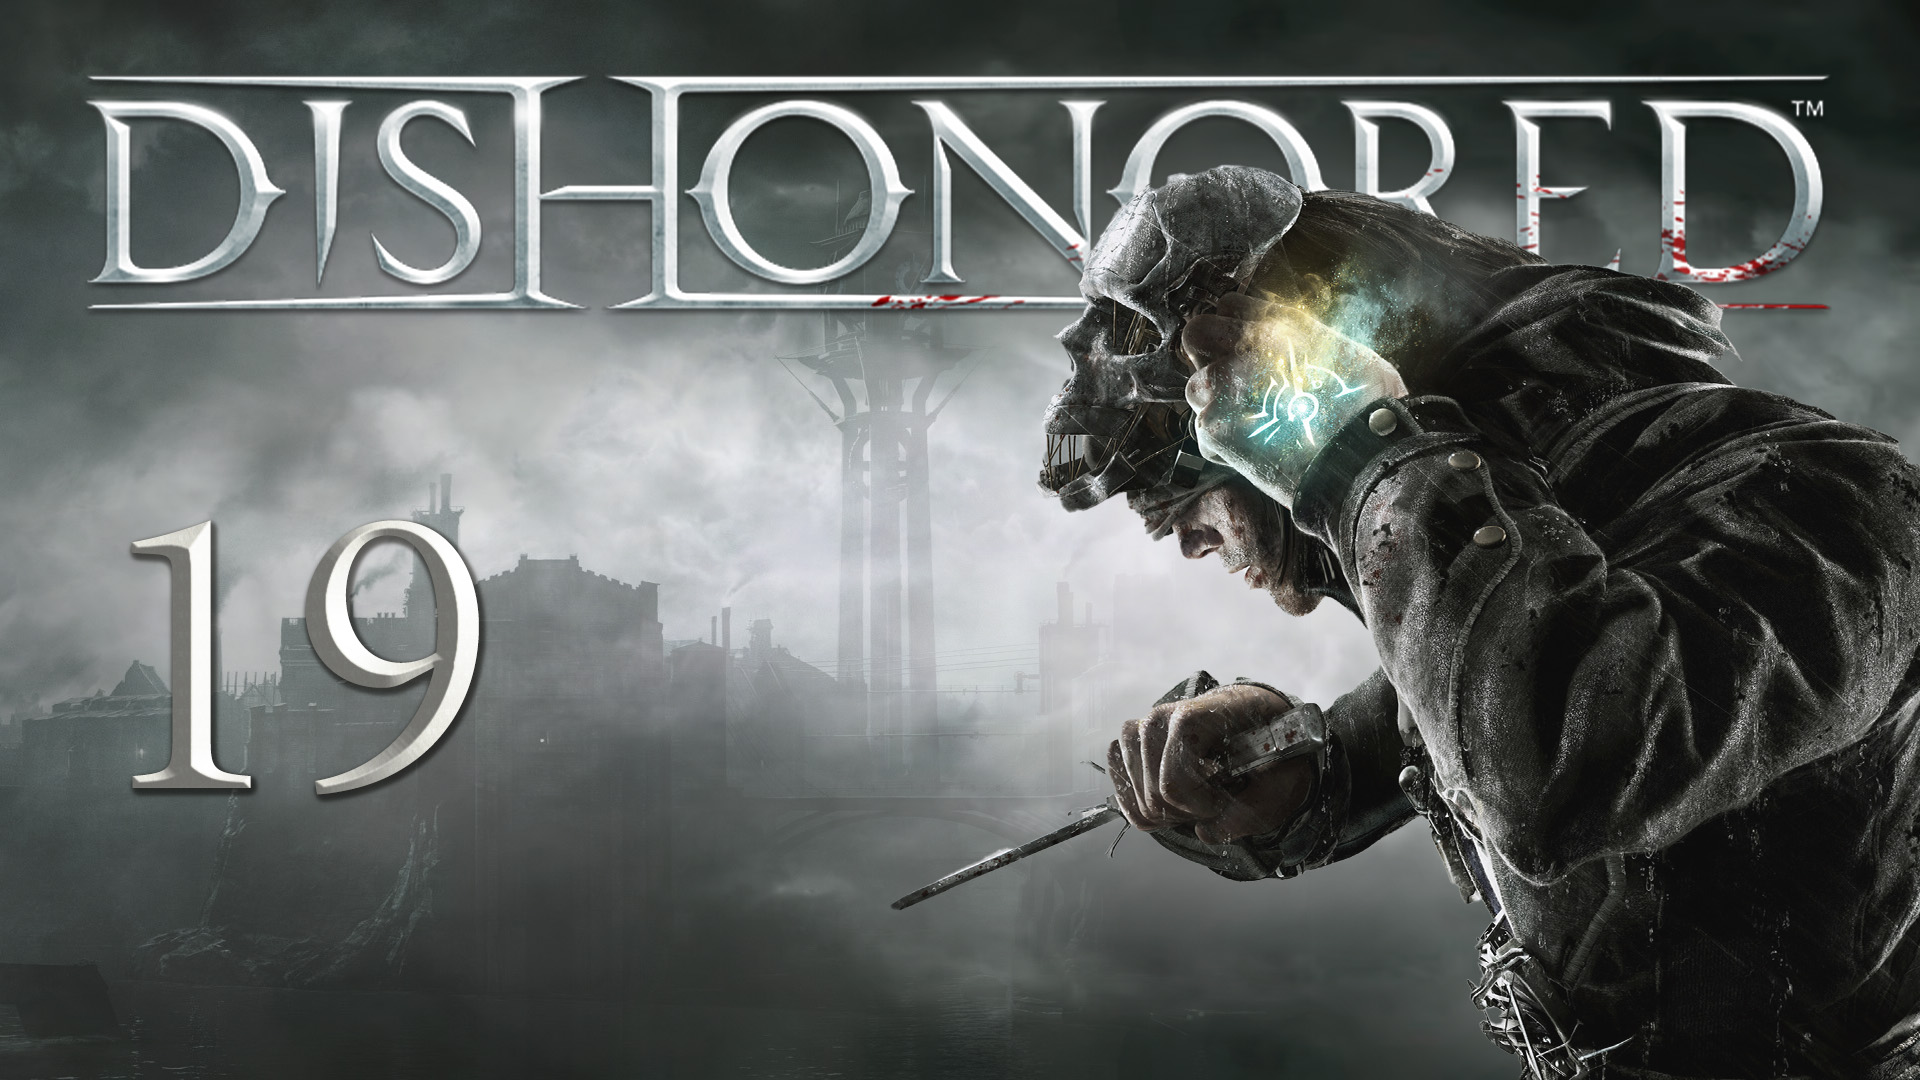 Dishonored - Укрытие лоялистов - Смятение смотрителей ч.2 - Прохождение игры на русском [#19] | PC